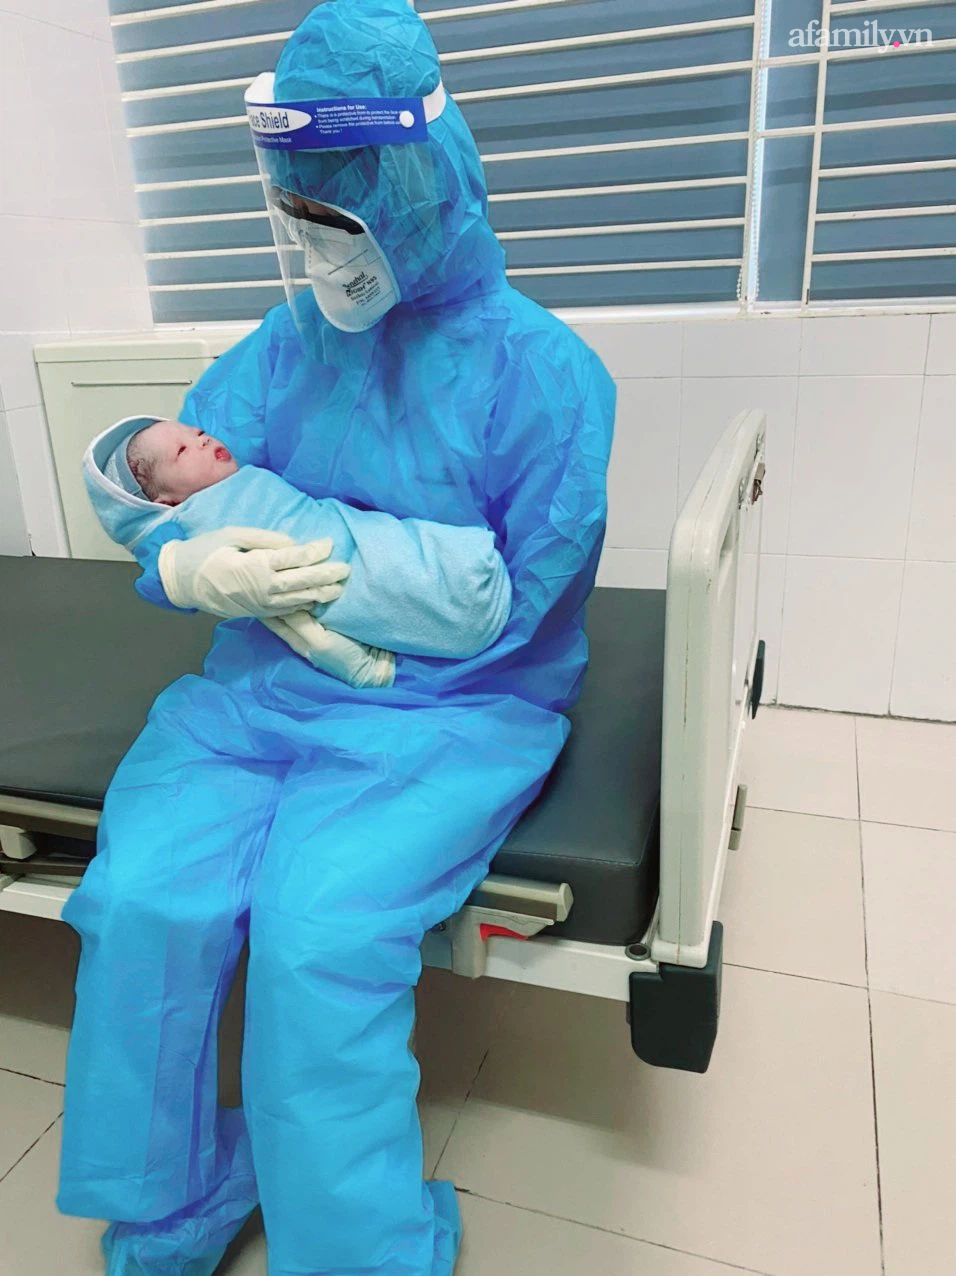 Bác sĩ đang chăm sóc em bé vừa mới sinh tại bệnh viện